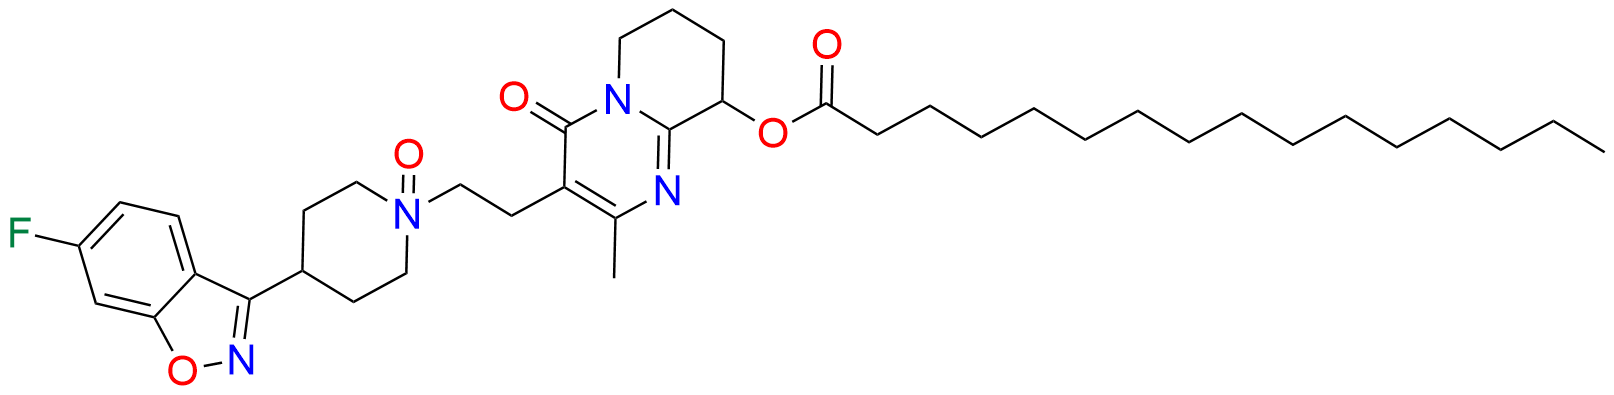 Paliperidone Palmitate N-Oxide